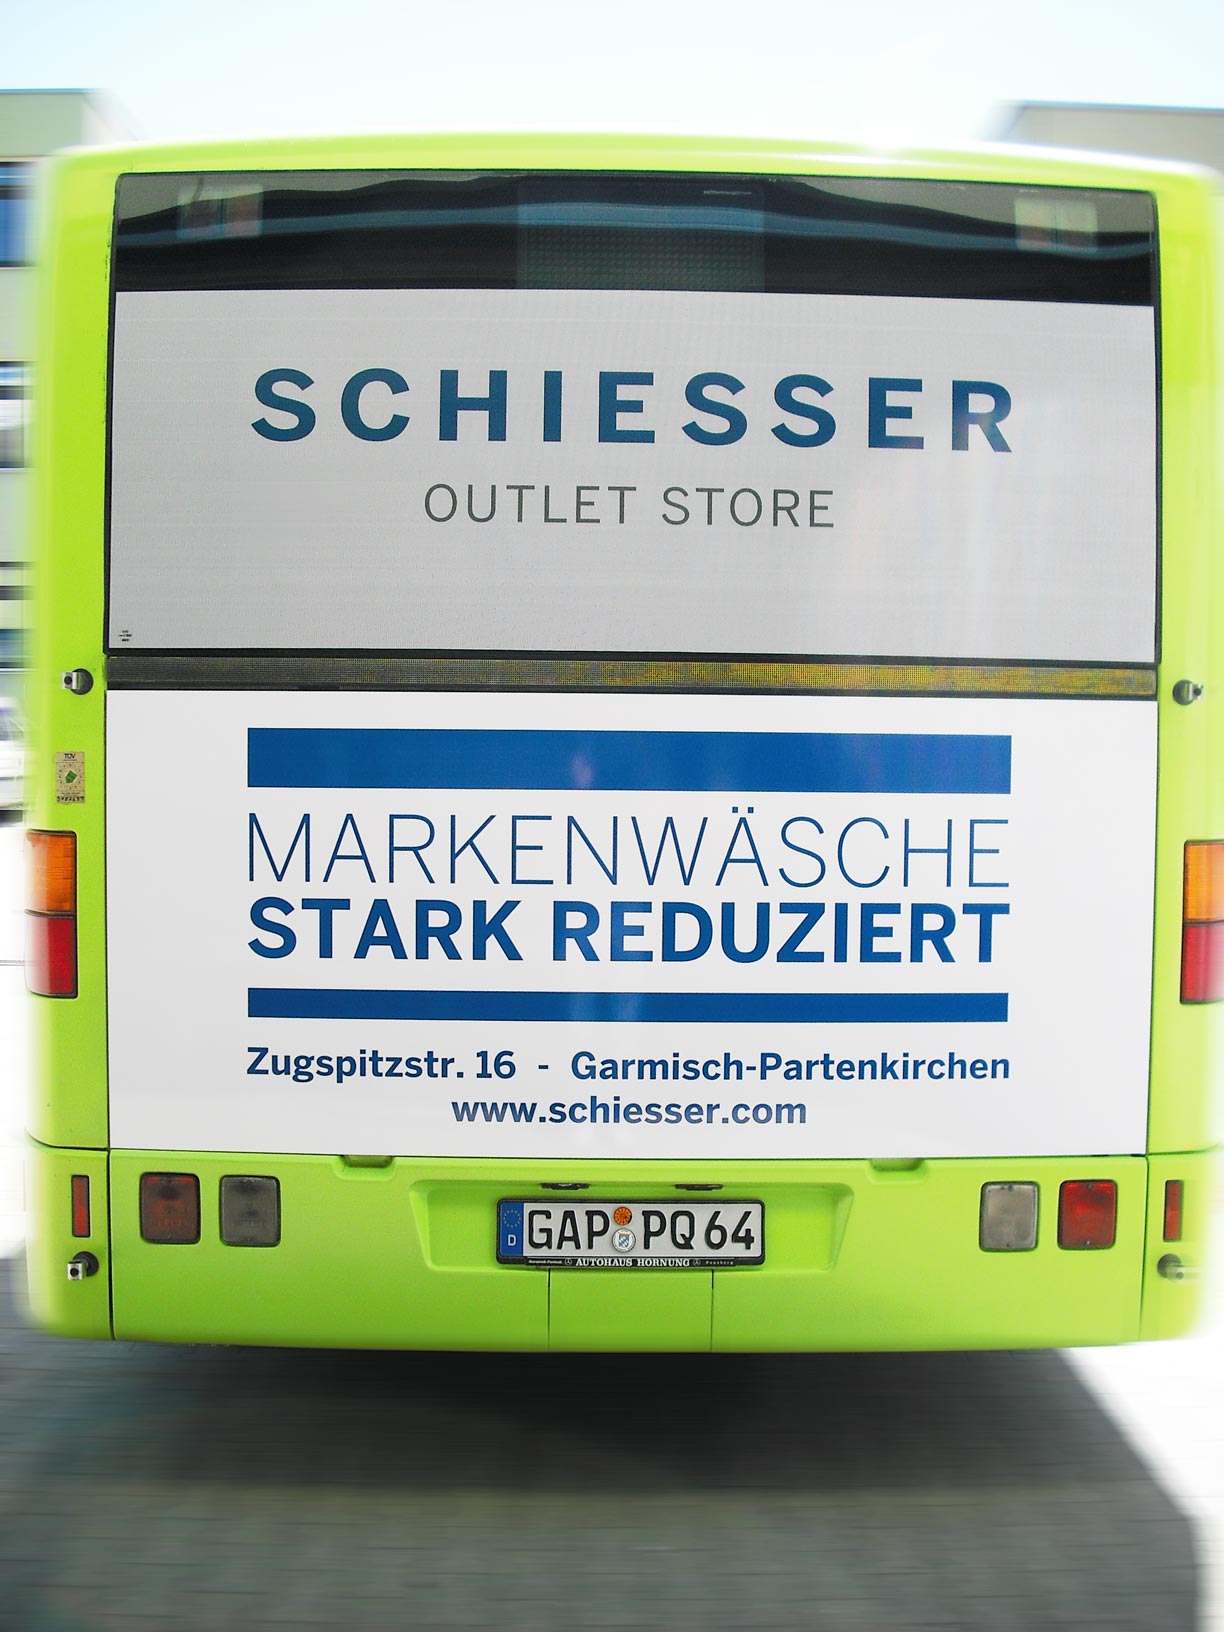 Buswerbung - Schiesser - Heck